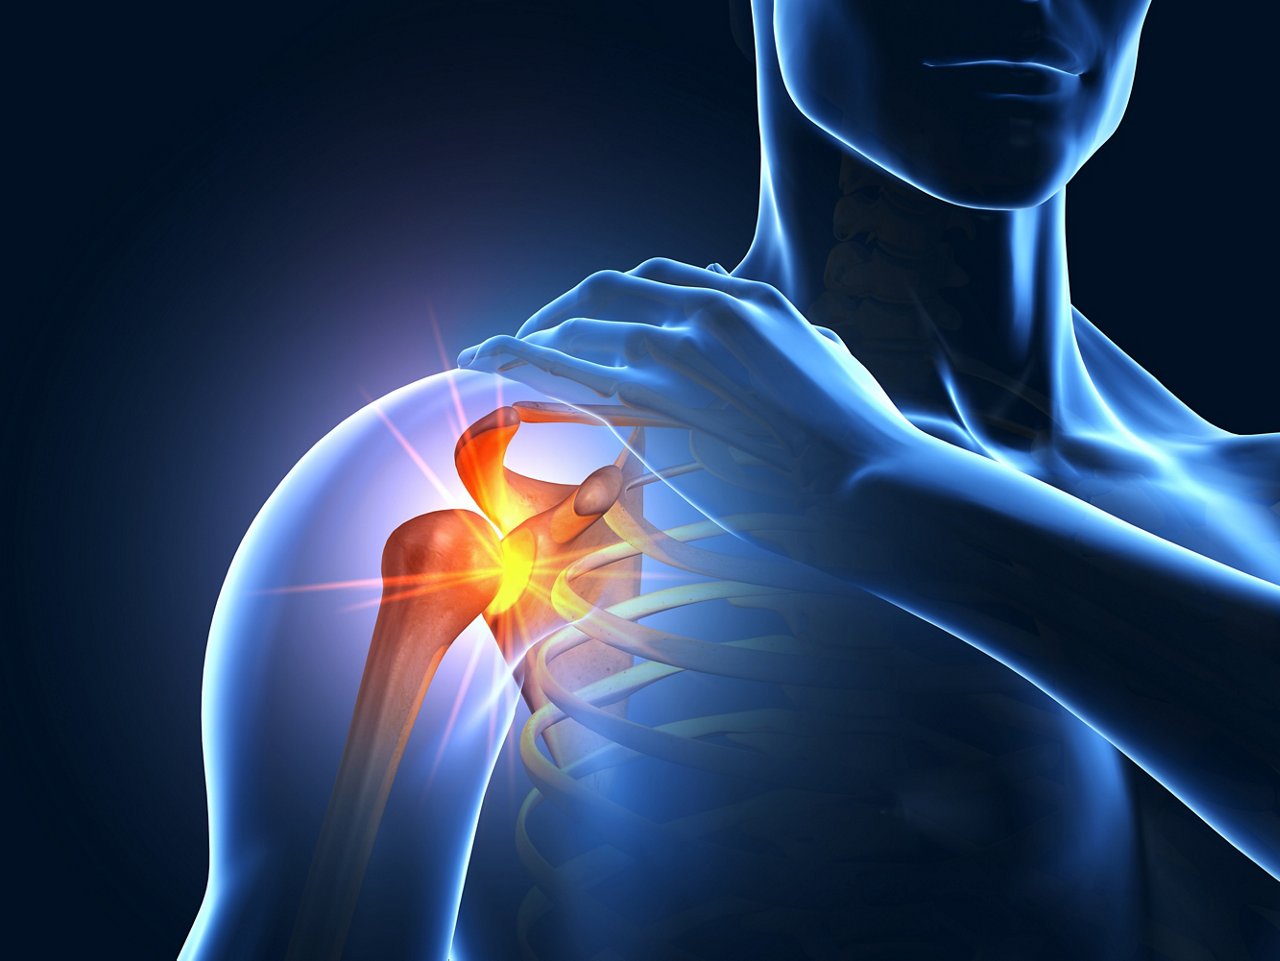 3D illustraion showing painful shoulder joint